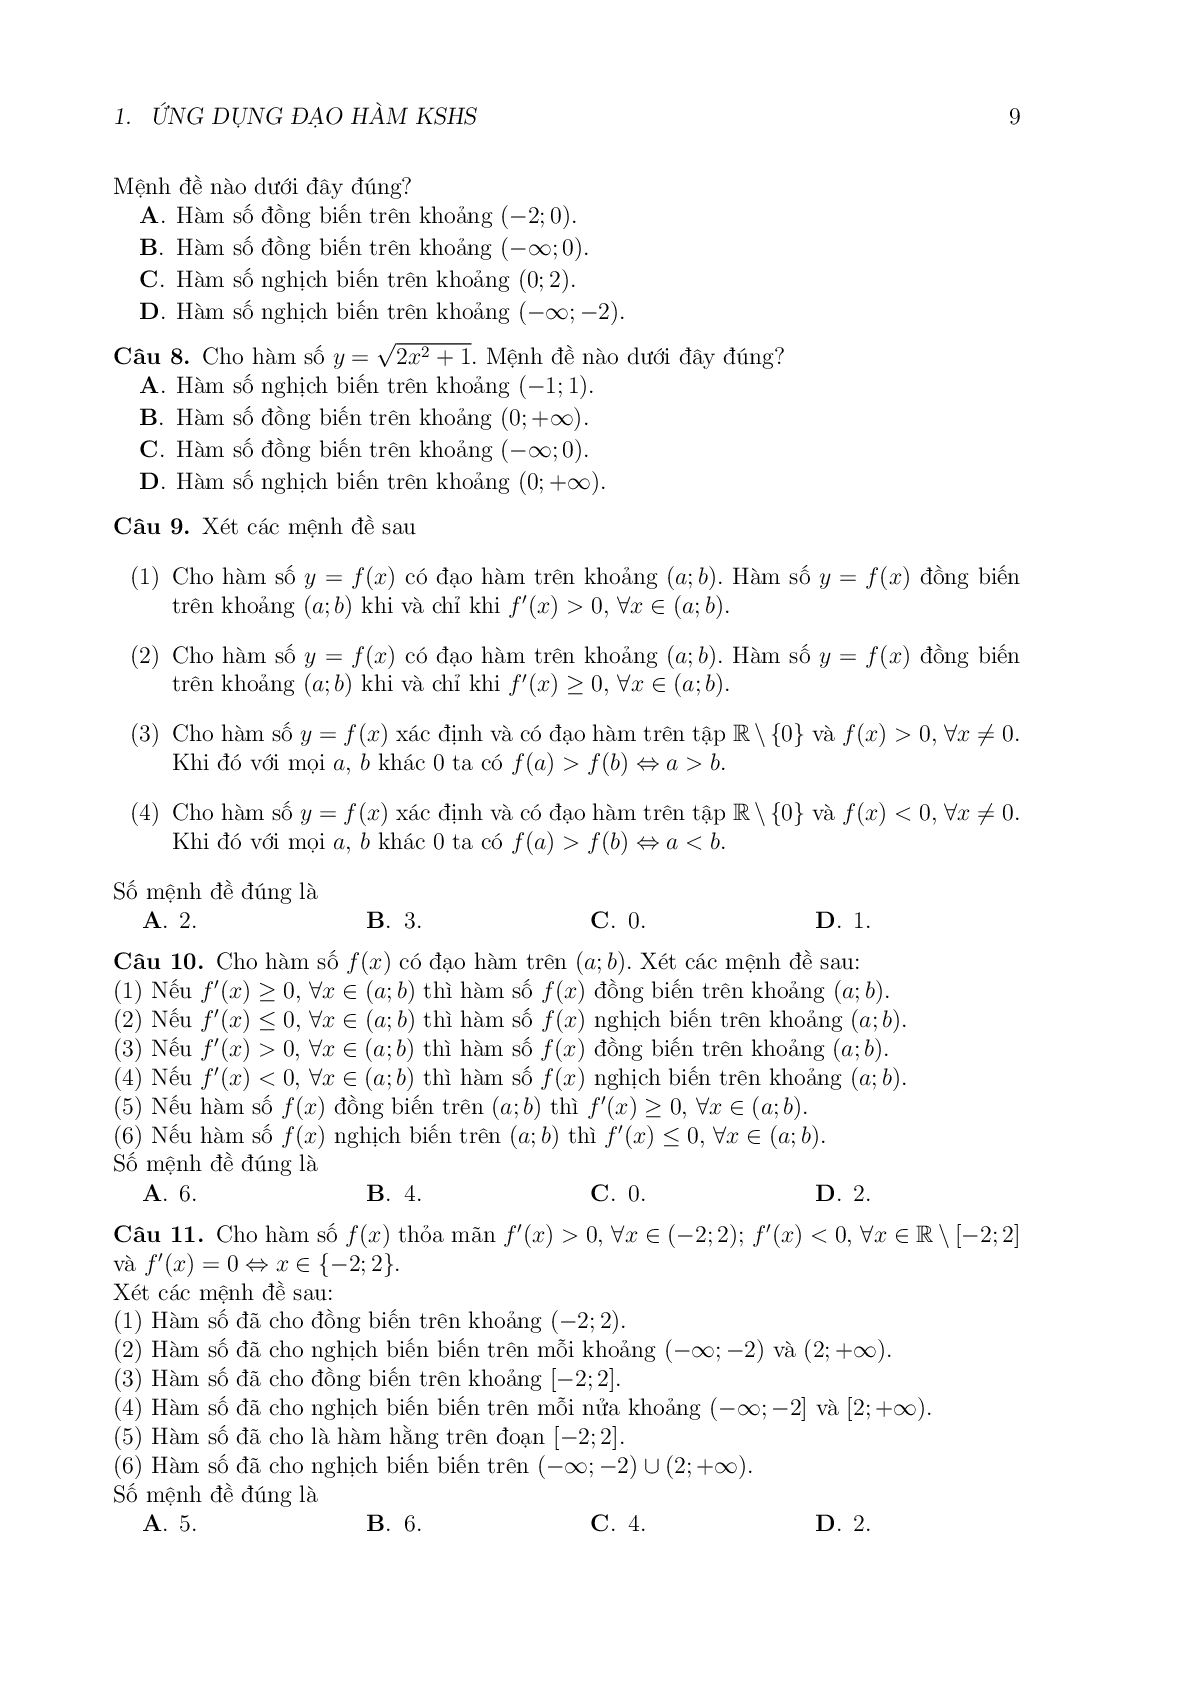 Chuyên đề Ứng dụng đạo hàm để Khảo sát hàm số (trang 3)